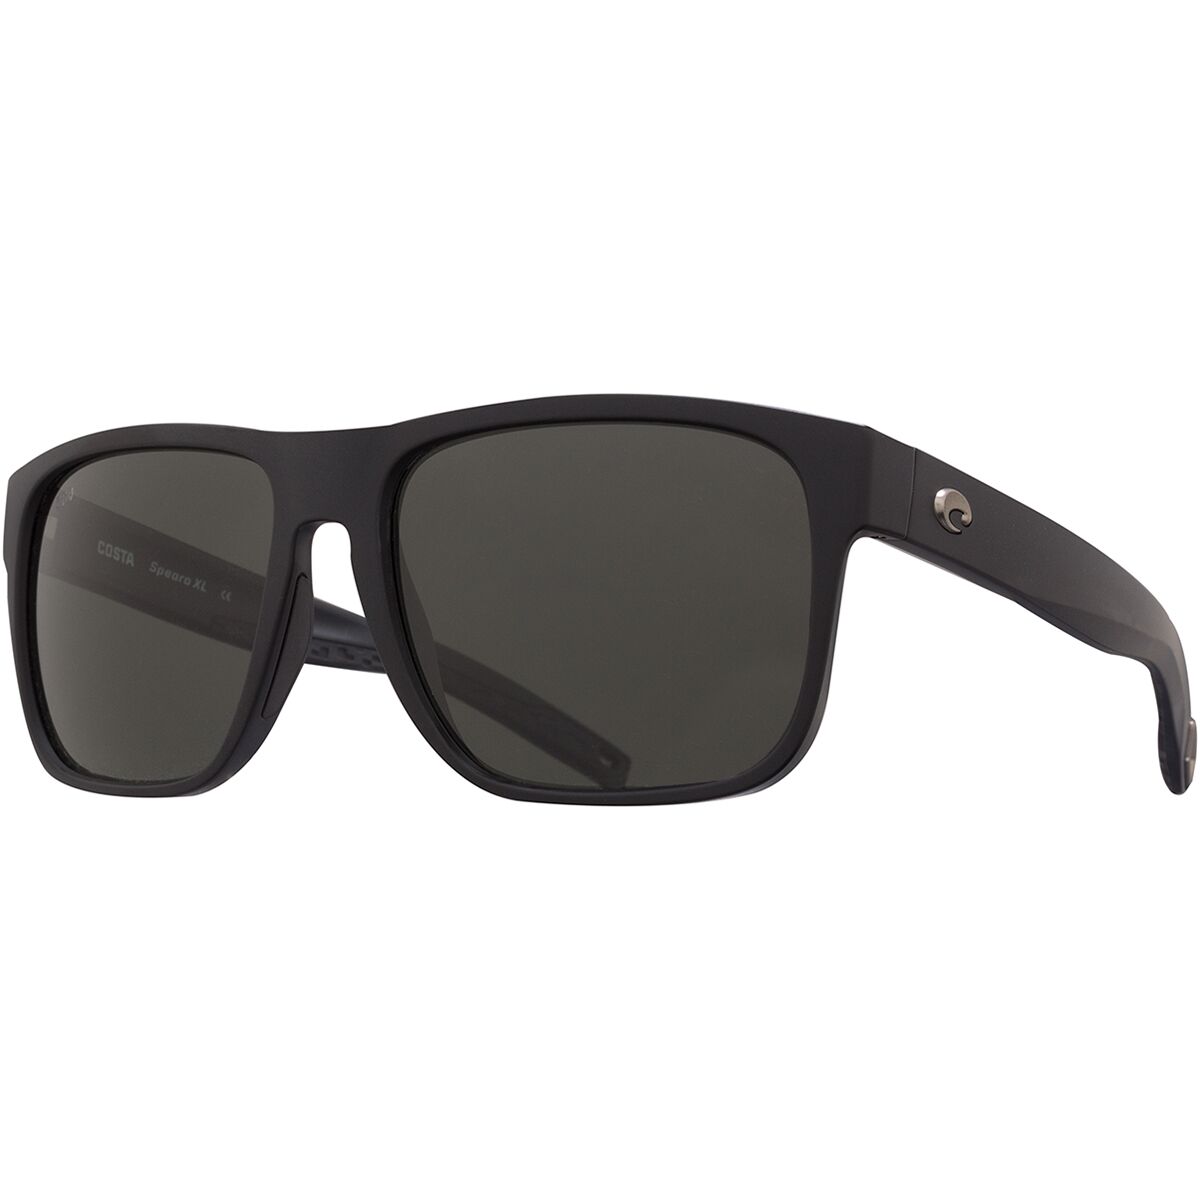 Costa Spearo XL 580G Polarized Sunglasses